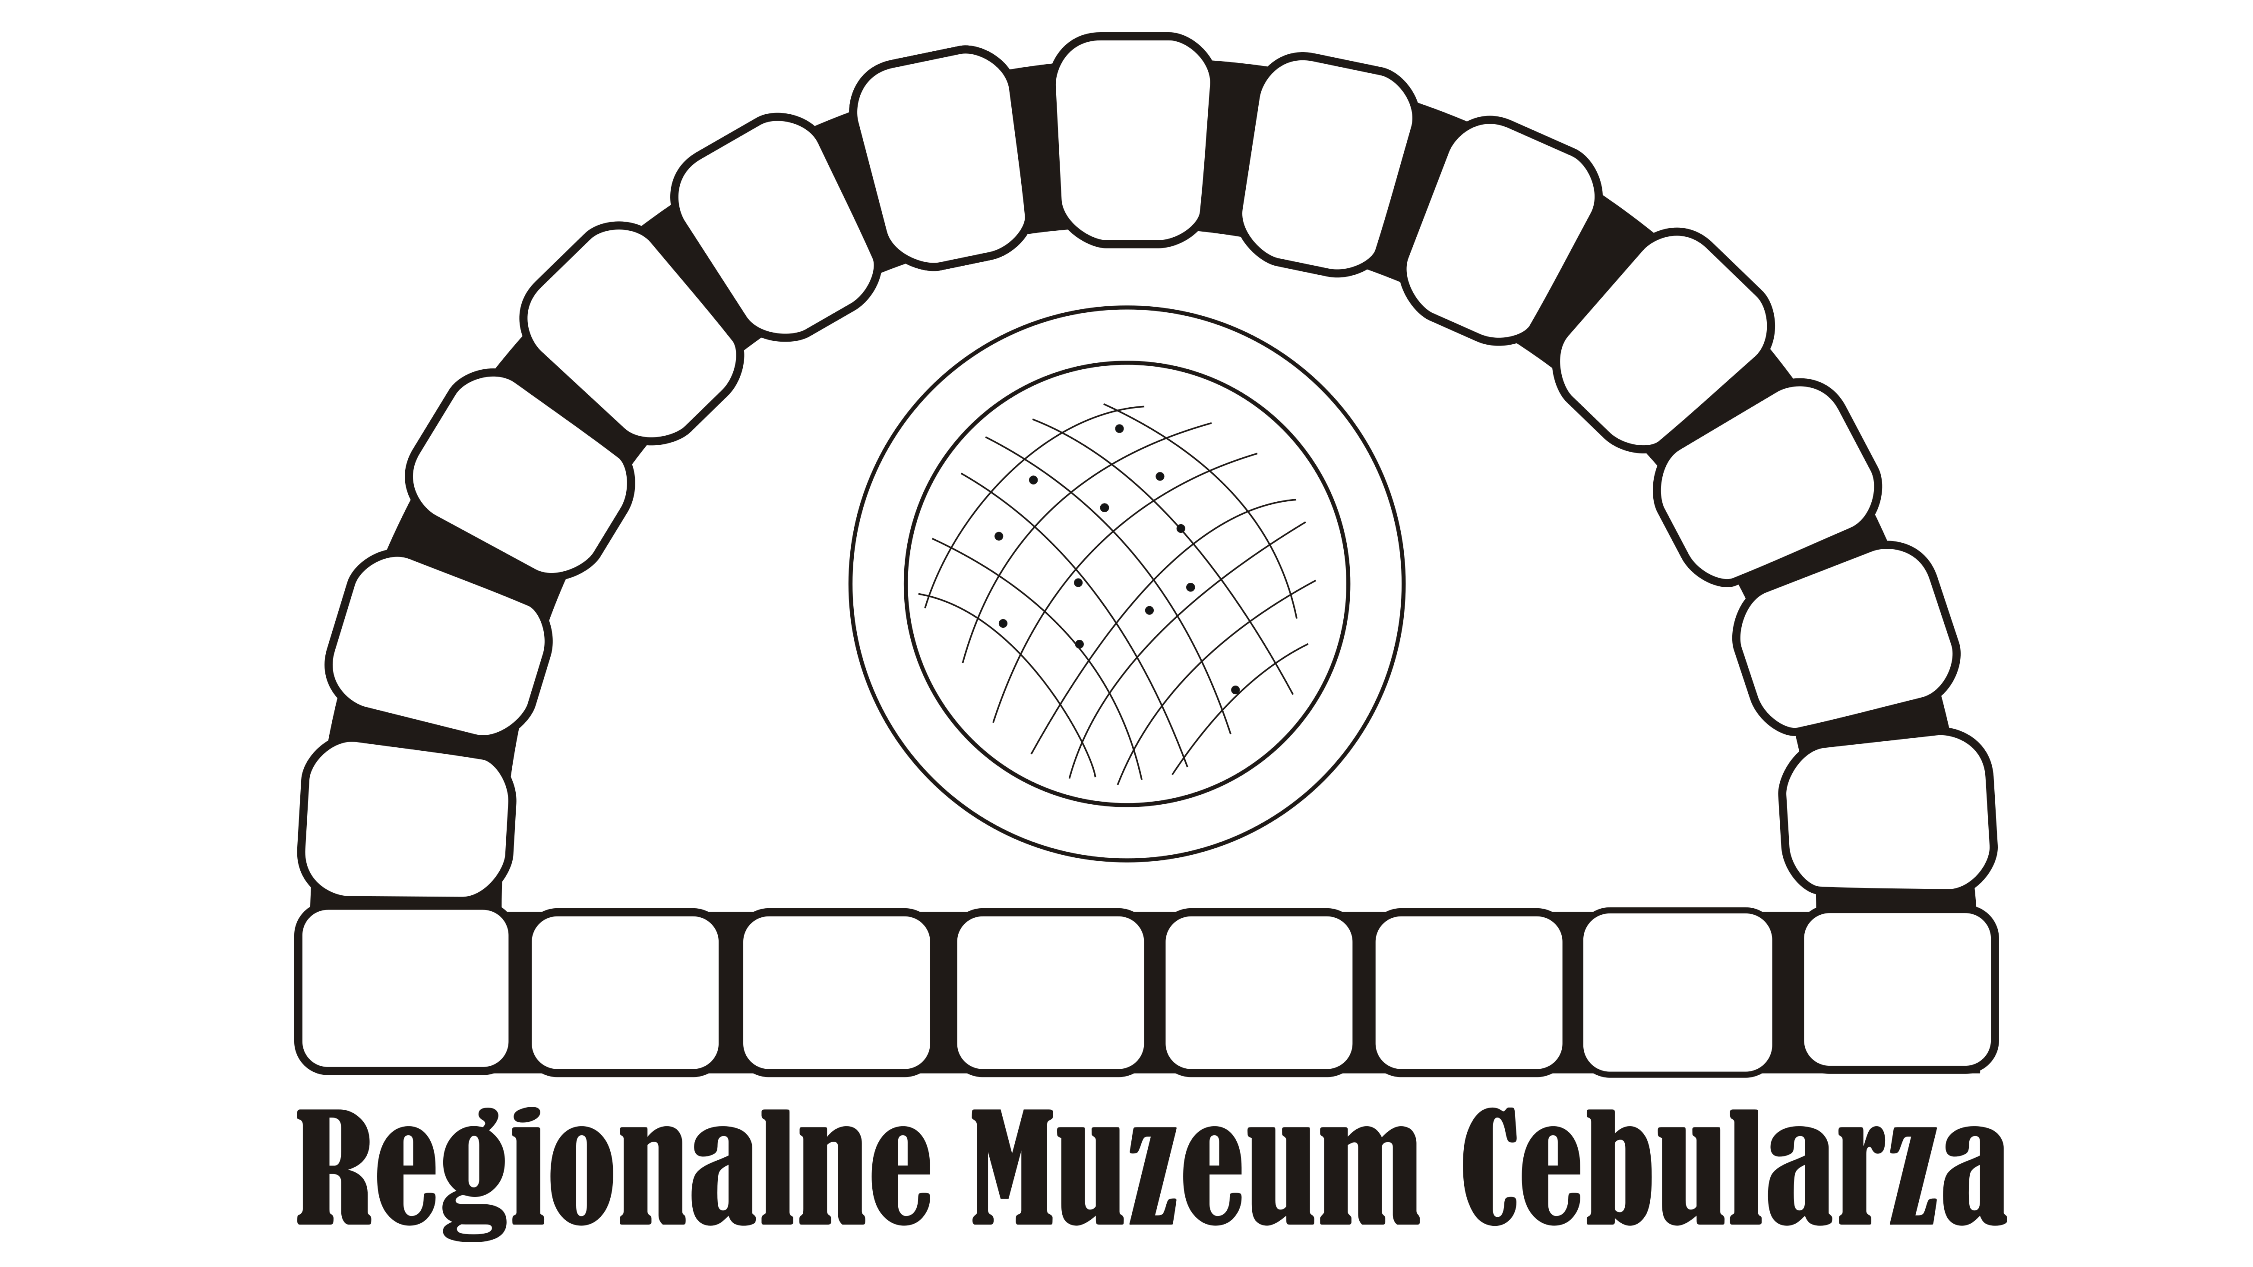 Logo Regionalnego Muzeum Cebularza